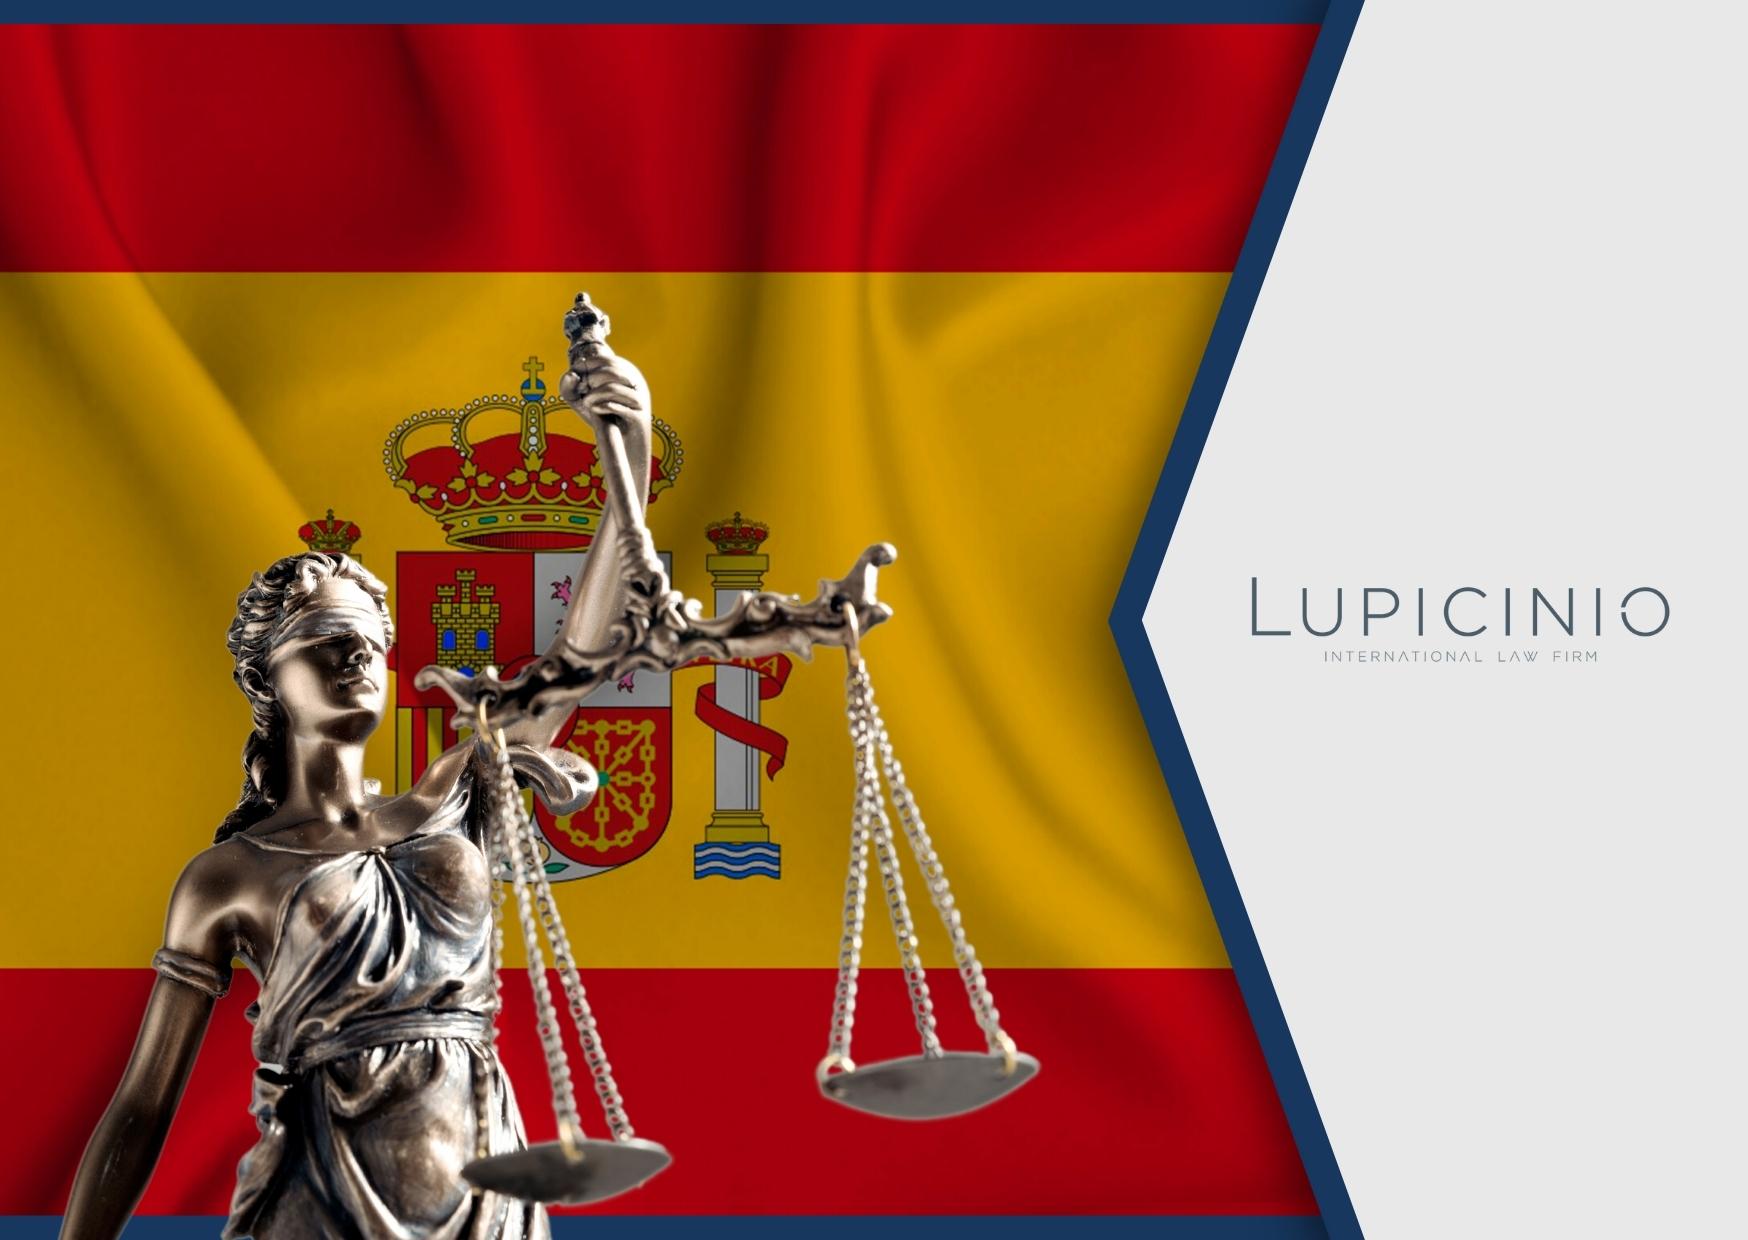 NACIONALIDAD ESPAÑOLA: DEFENSA DE LA VIA ADMINISTRATIVA PARA MEJORAR Y AGILIZAR LA JUSTICIA